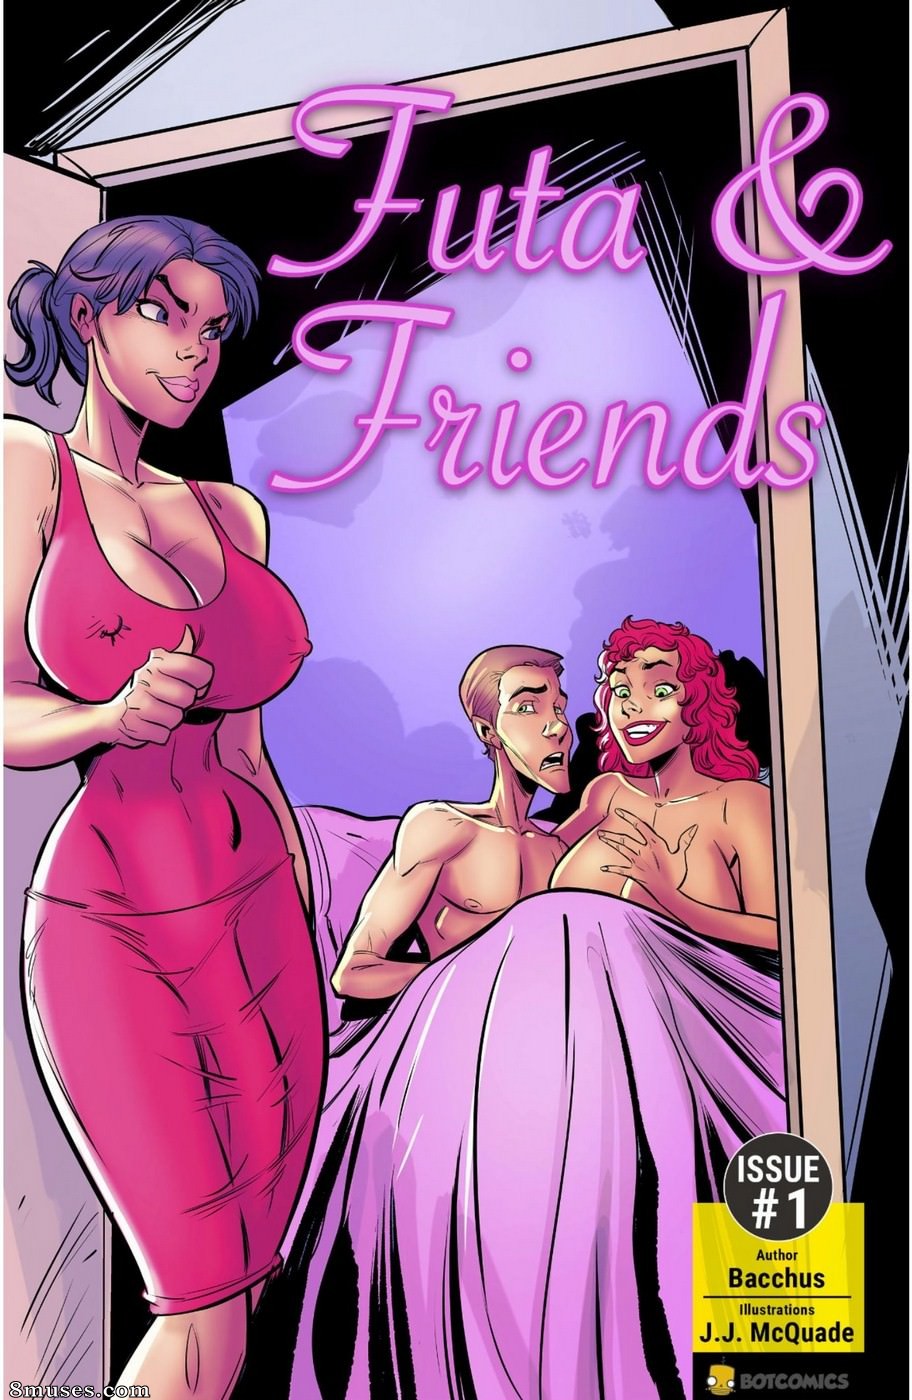 Cartoon Porn Friends - Futa & Friends Issue 2 - 8muses Comics - Sex Comics and Porn Cartoons